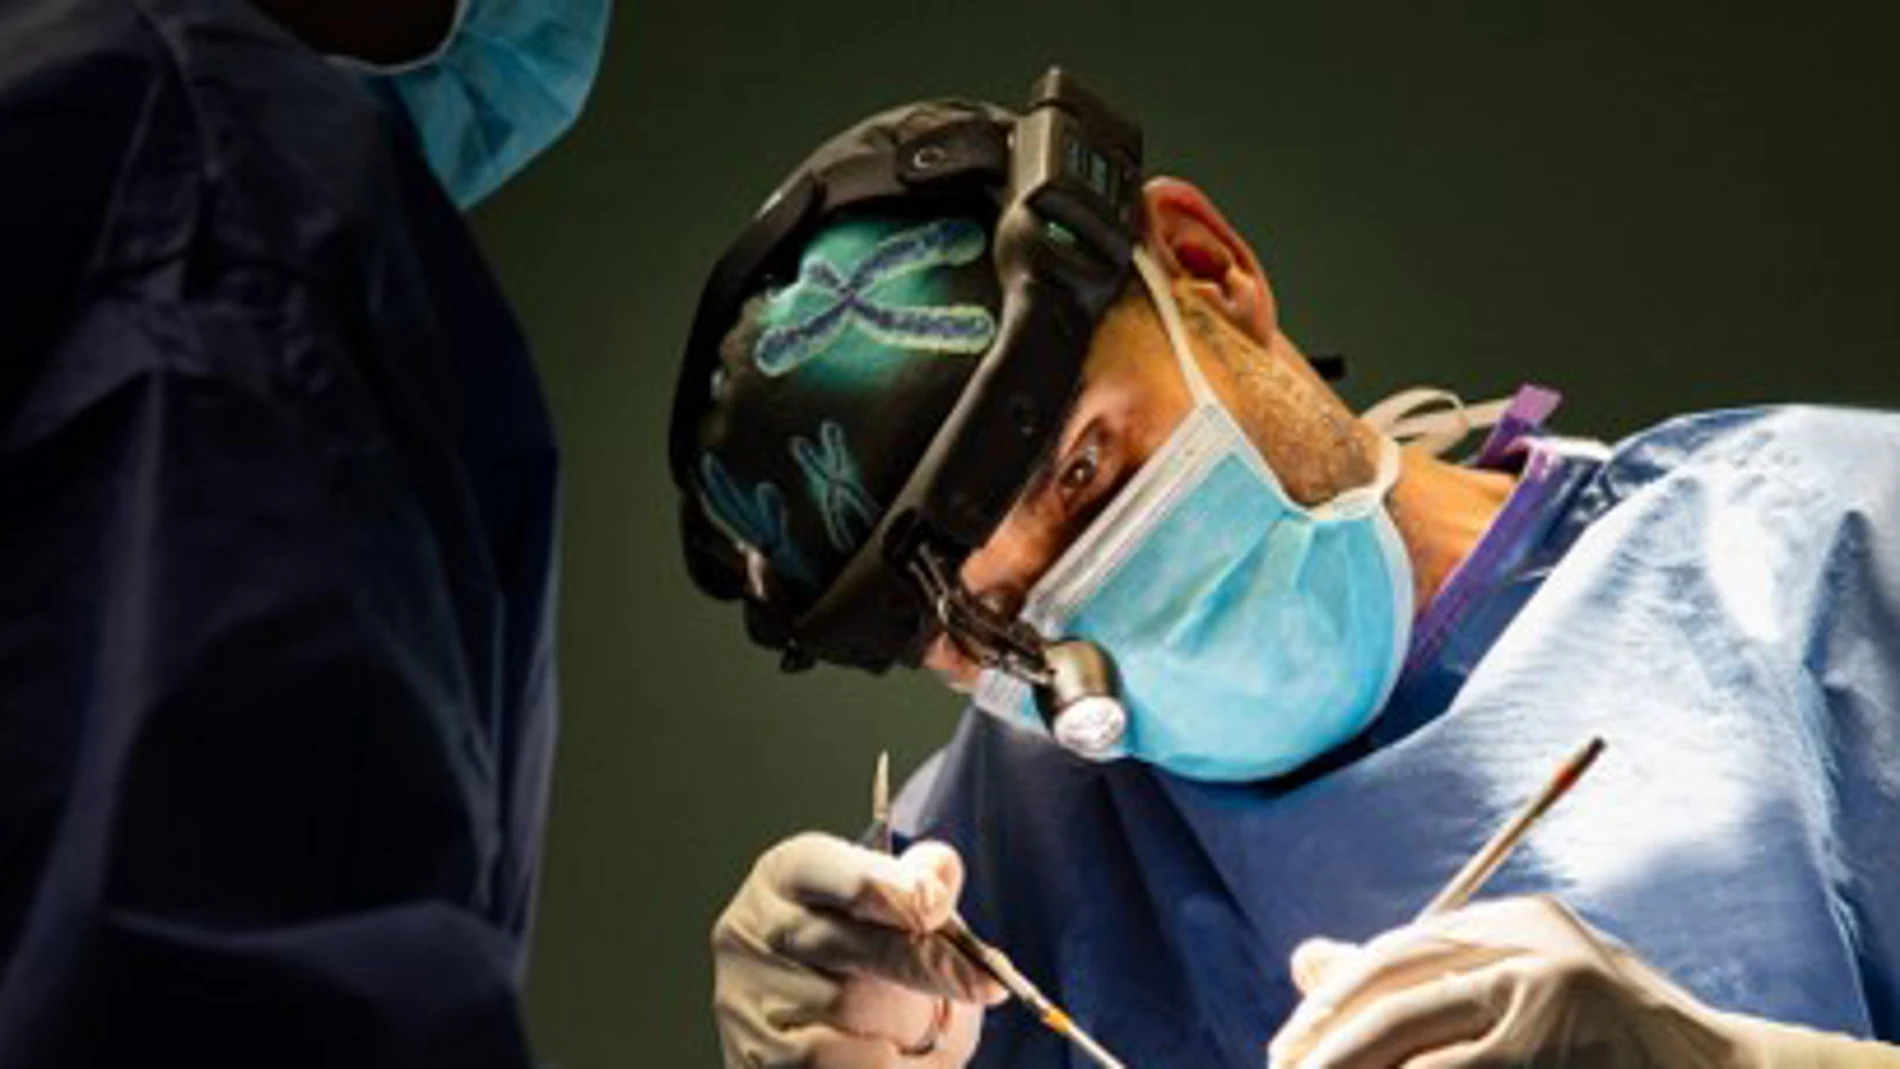 Los cirujanos consideran la rinoplastia como una de las cirugías más complejas, y el Dr. Terré realiza todo tipo de técnicas de rinoplastia